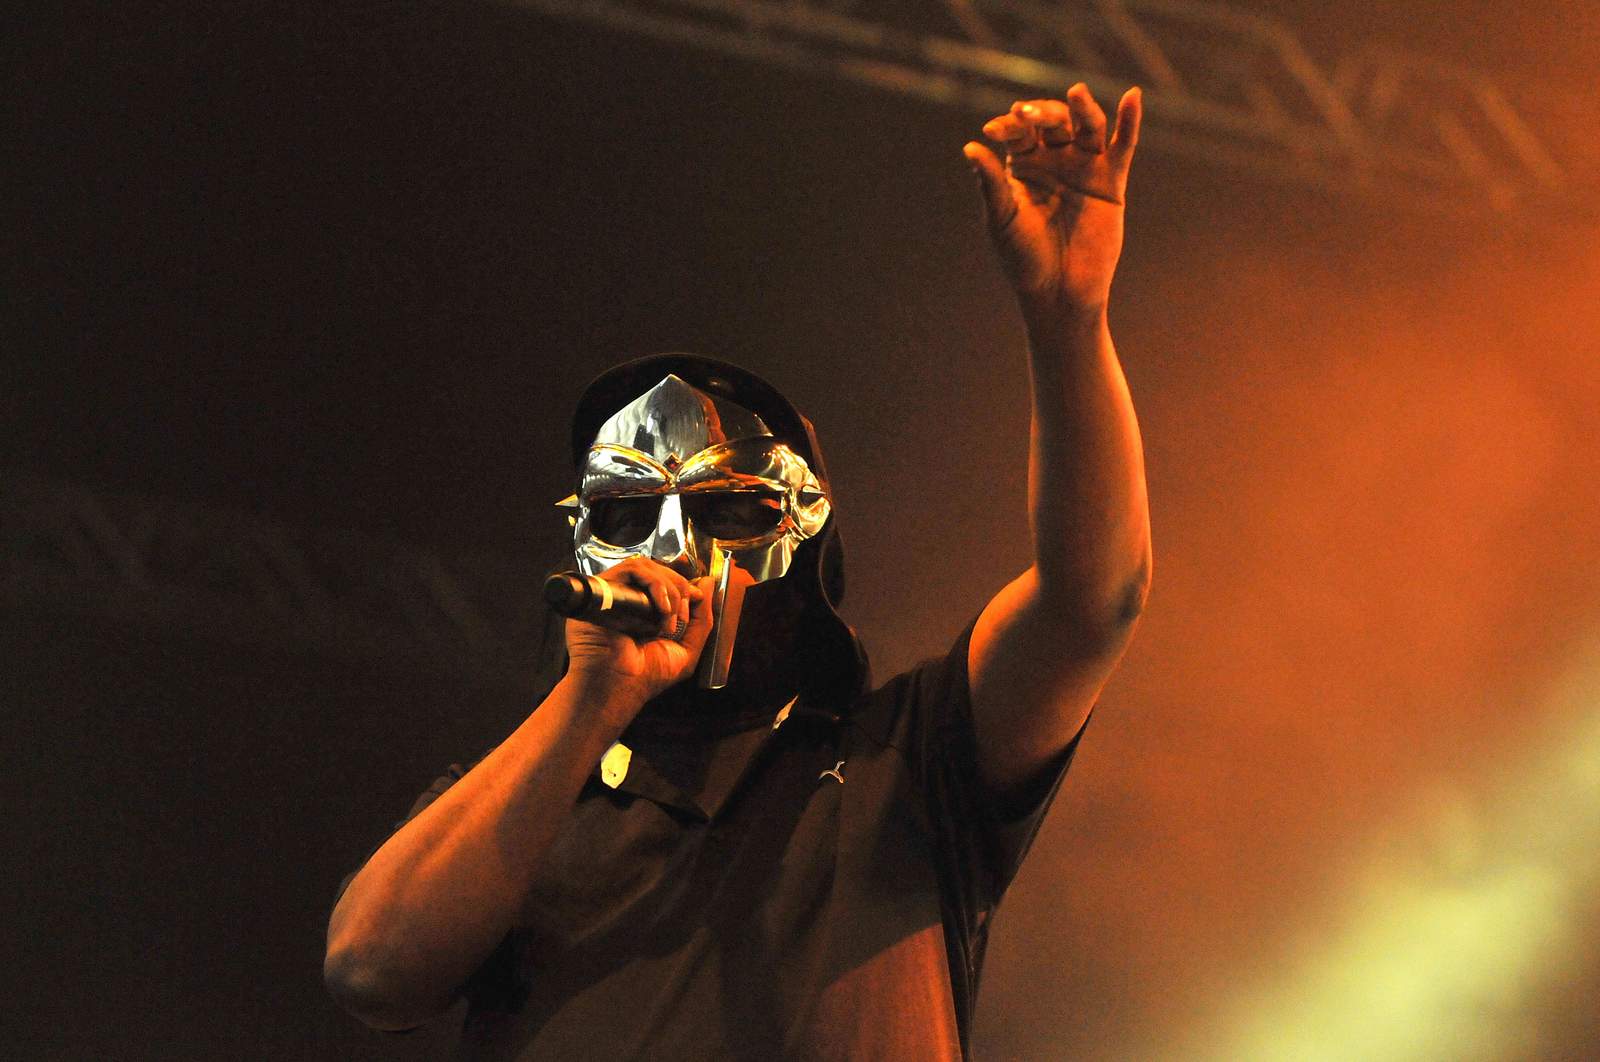 Legendary rapper MF Doom dies at 49, family says